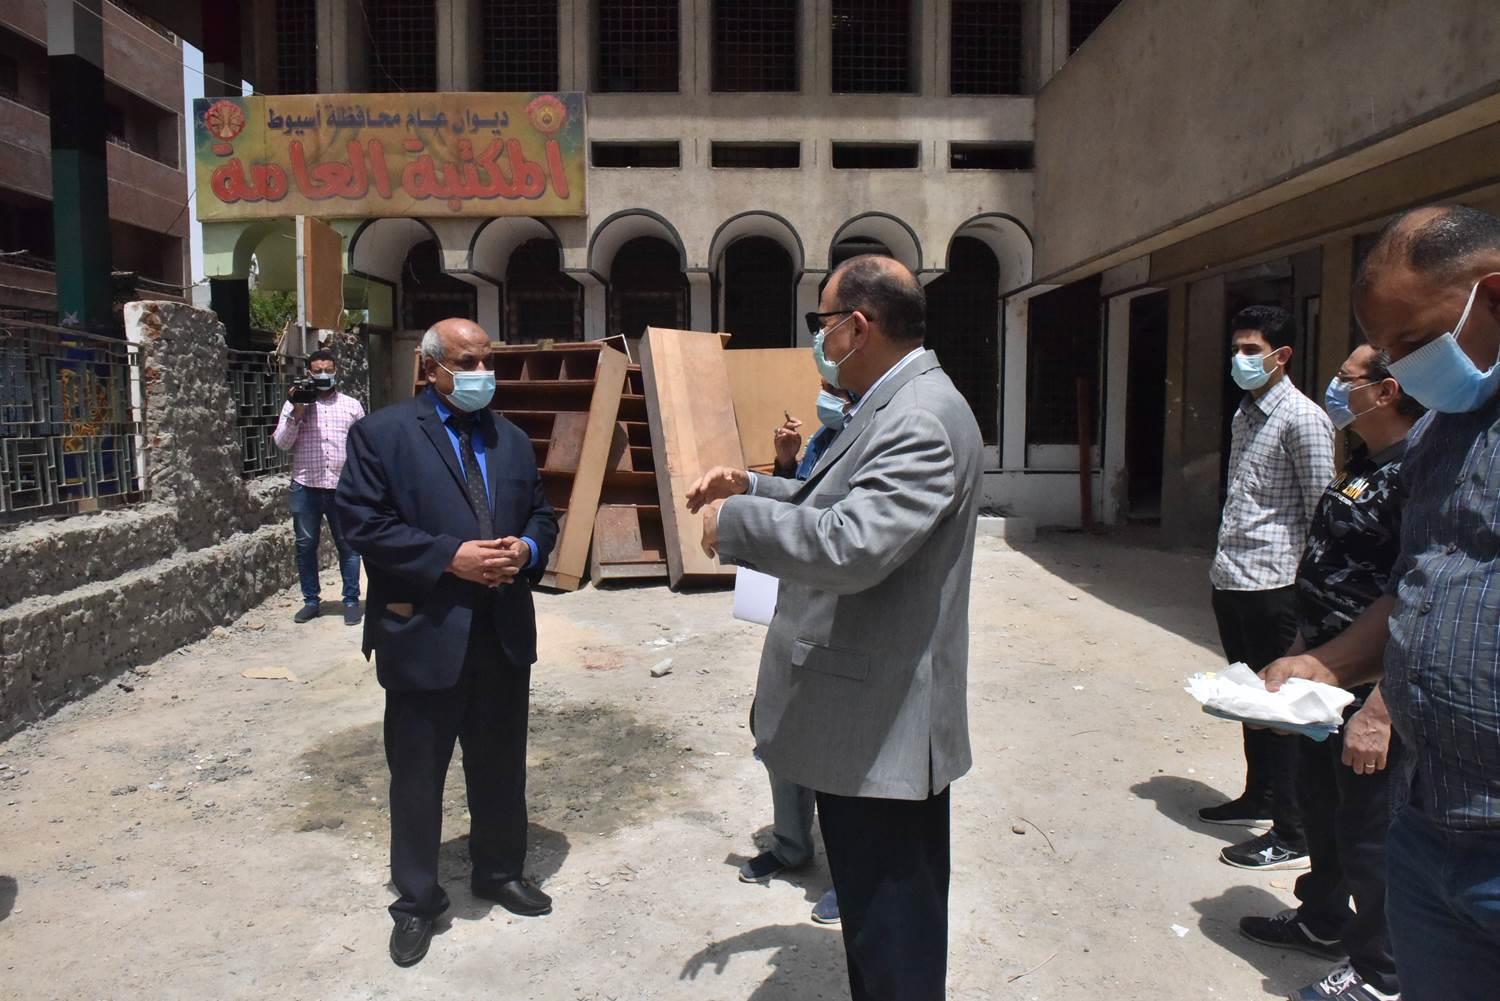  محافظ أسيوط يتفقد أعمال التطوير بمقر الفرع الرئيسي لمكتبة مصر العامة